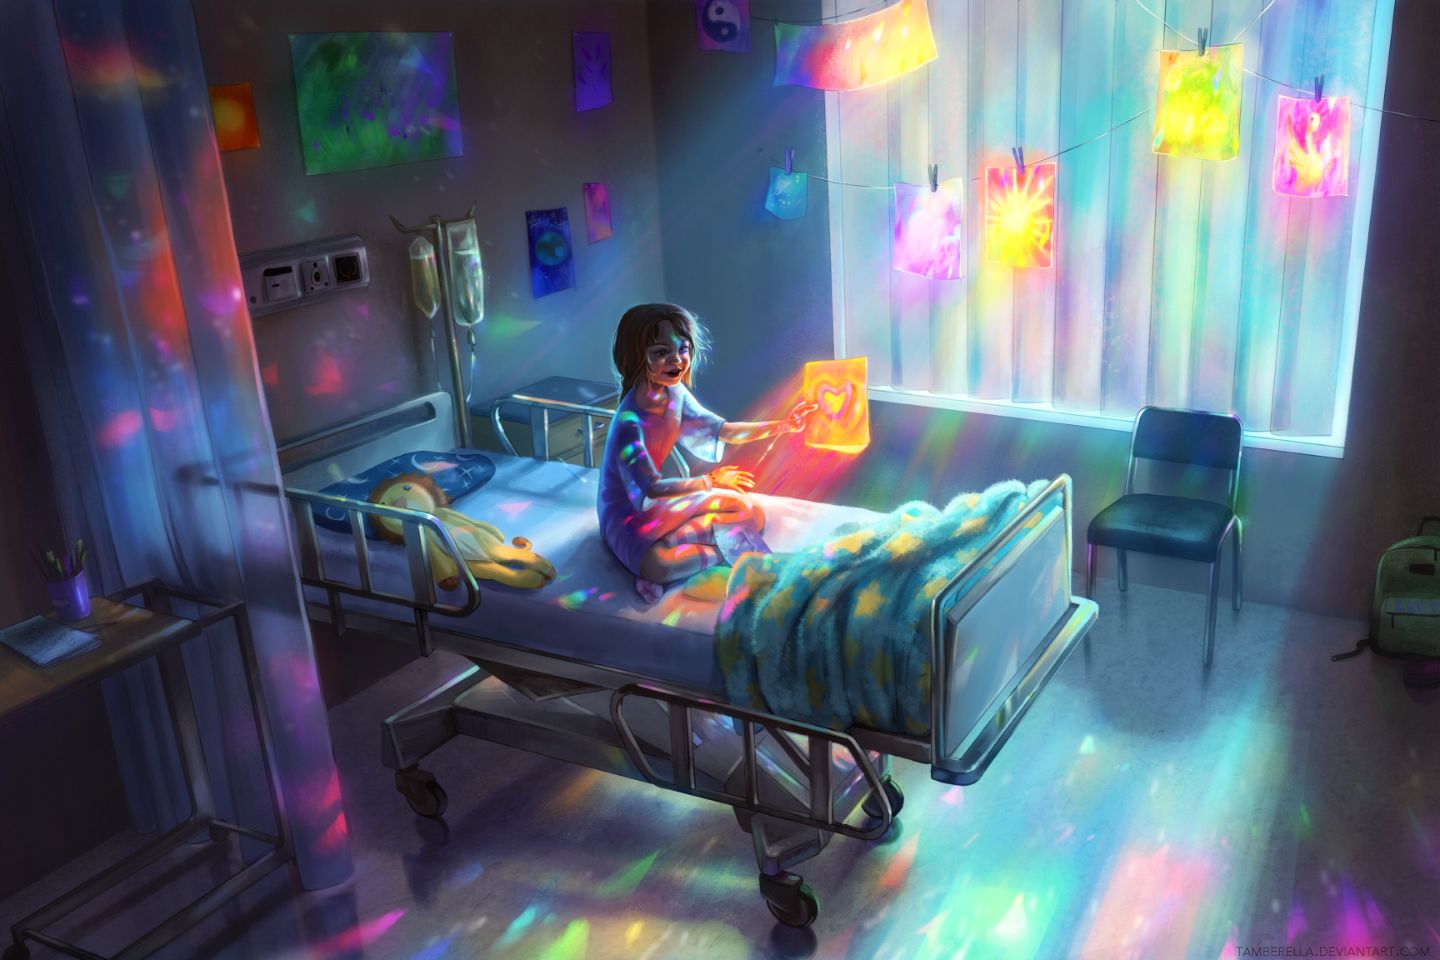 Wallpaper, hospital, bed, little girl, children, artwork, 2D, anime girls, emotion, teddy bears, Youth, digital art 1440x960